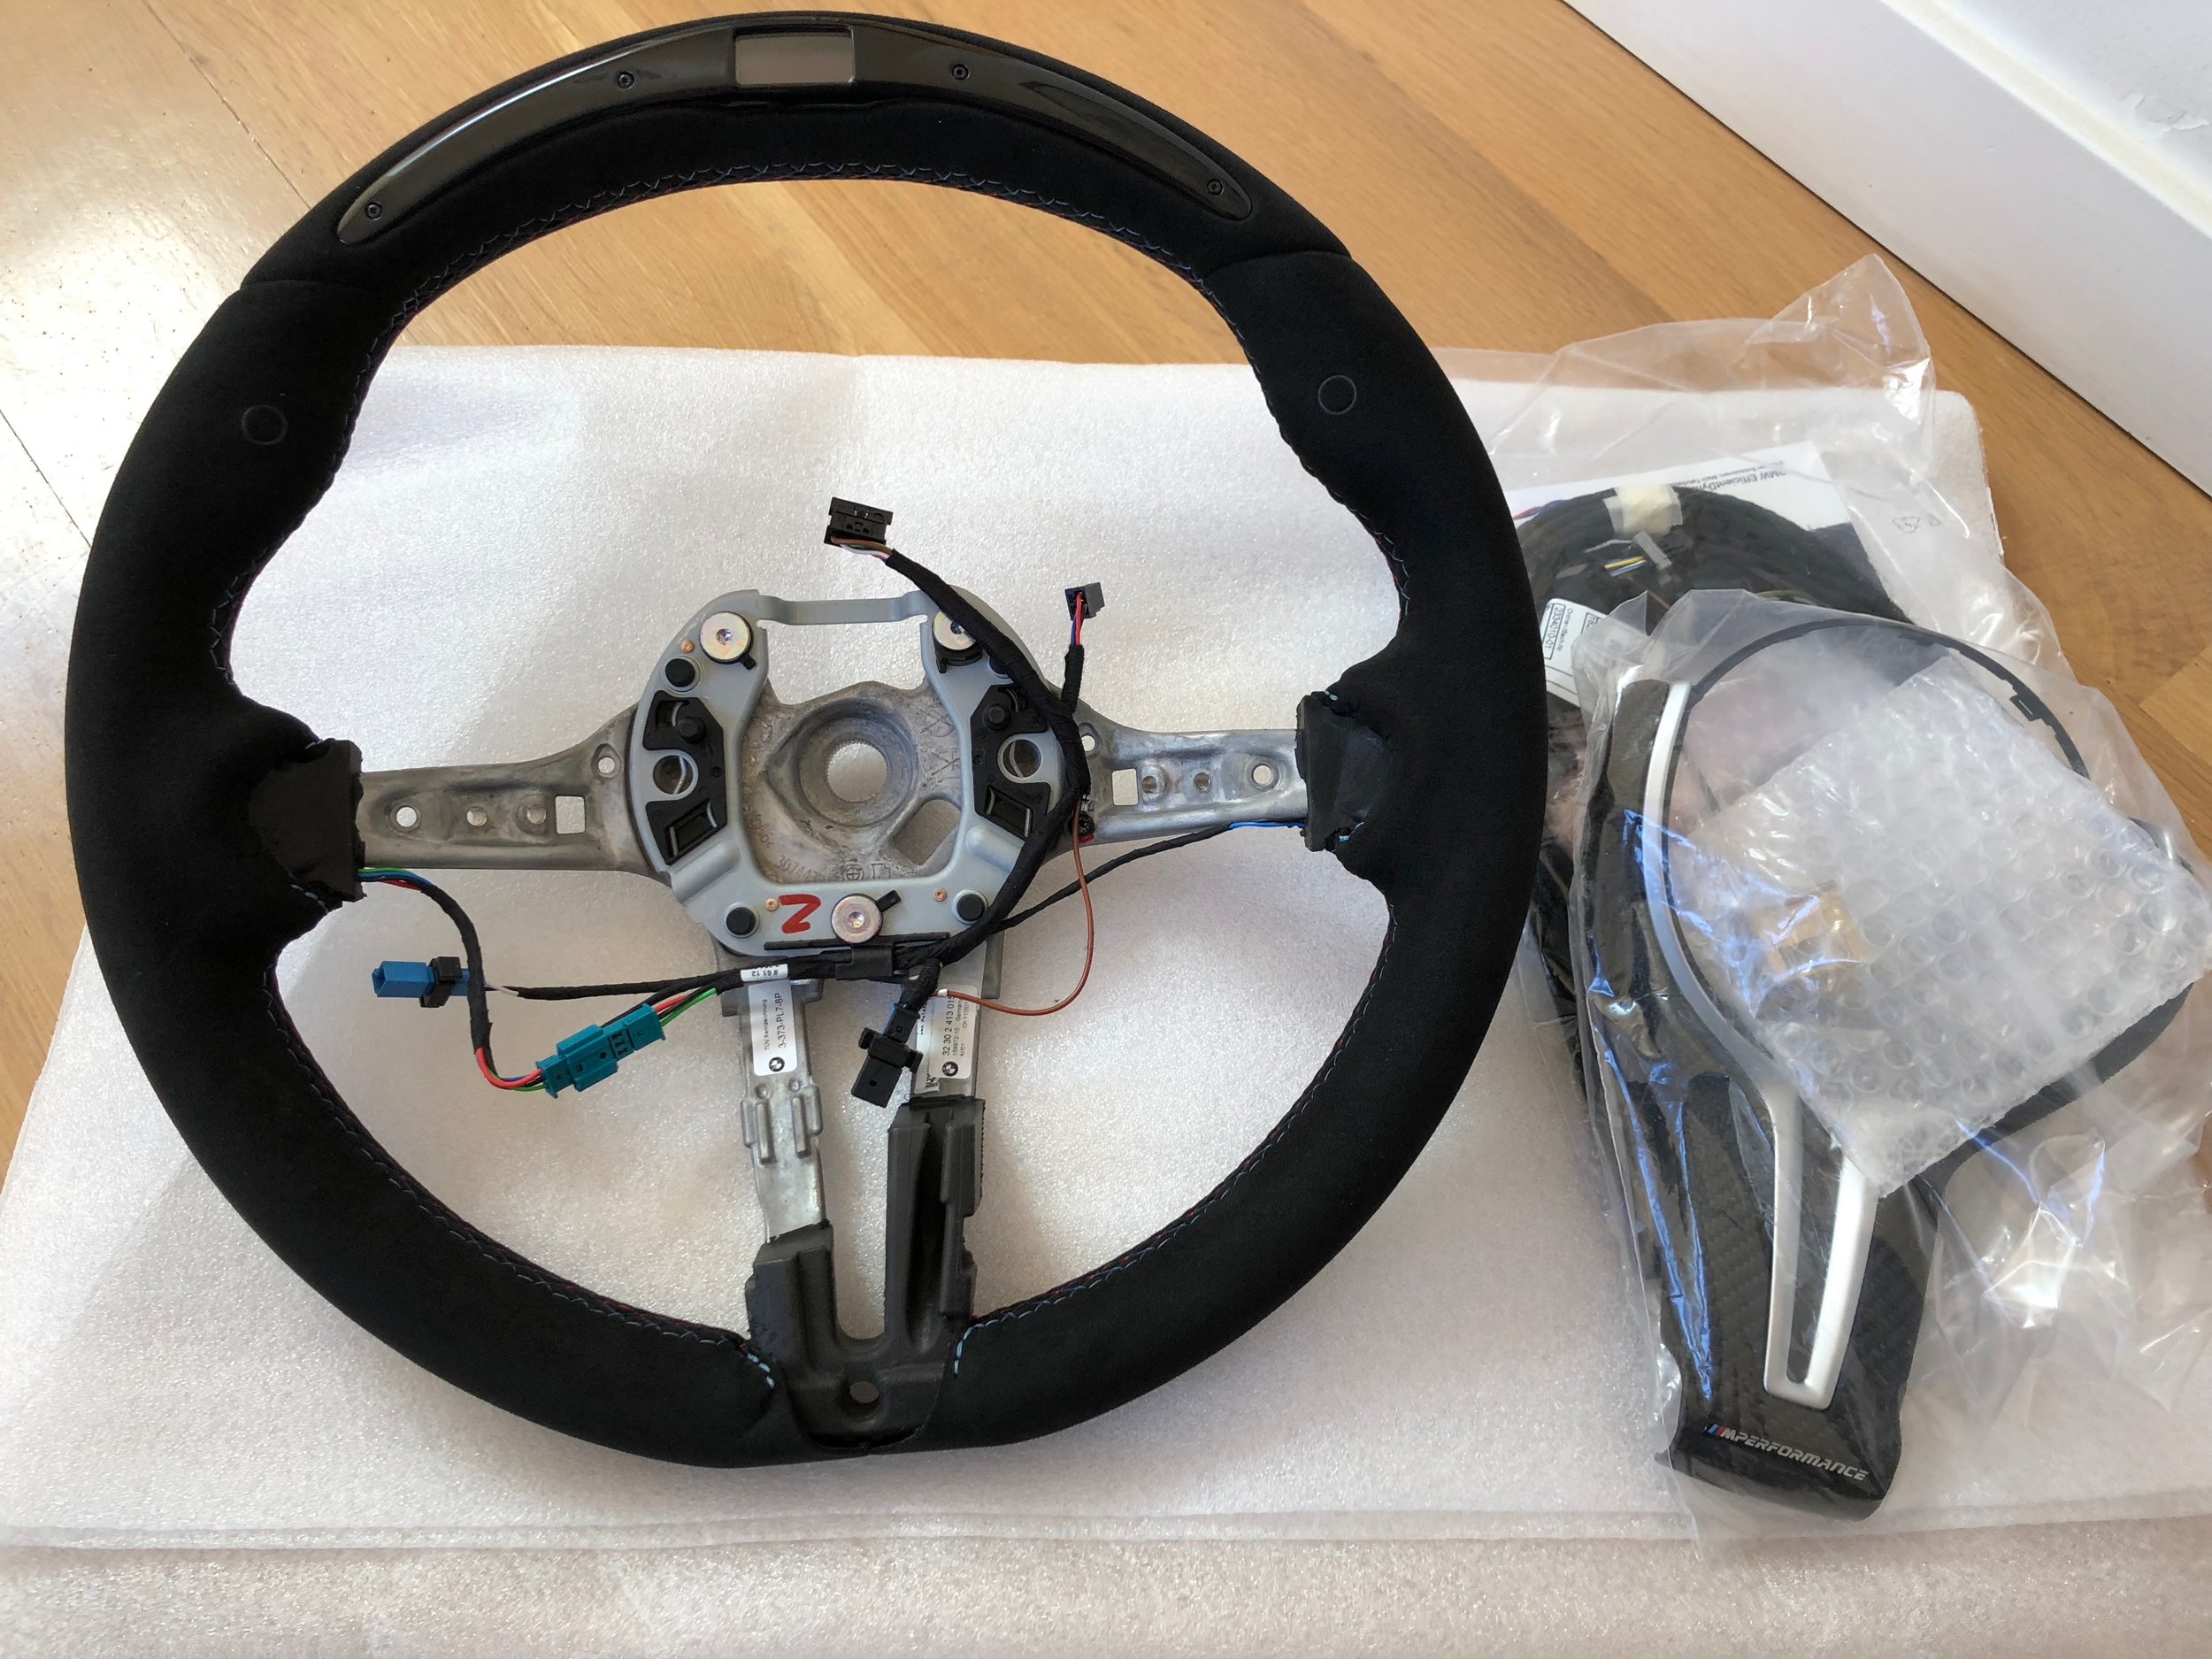 M Performance racing steering wheel with display